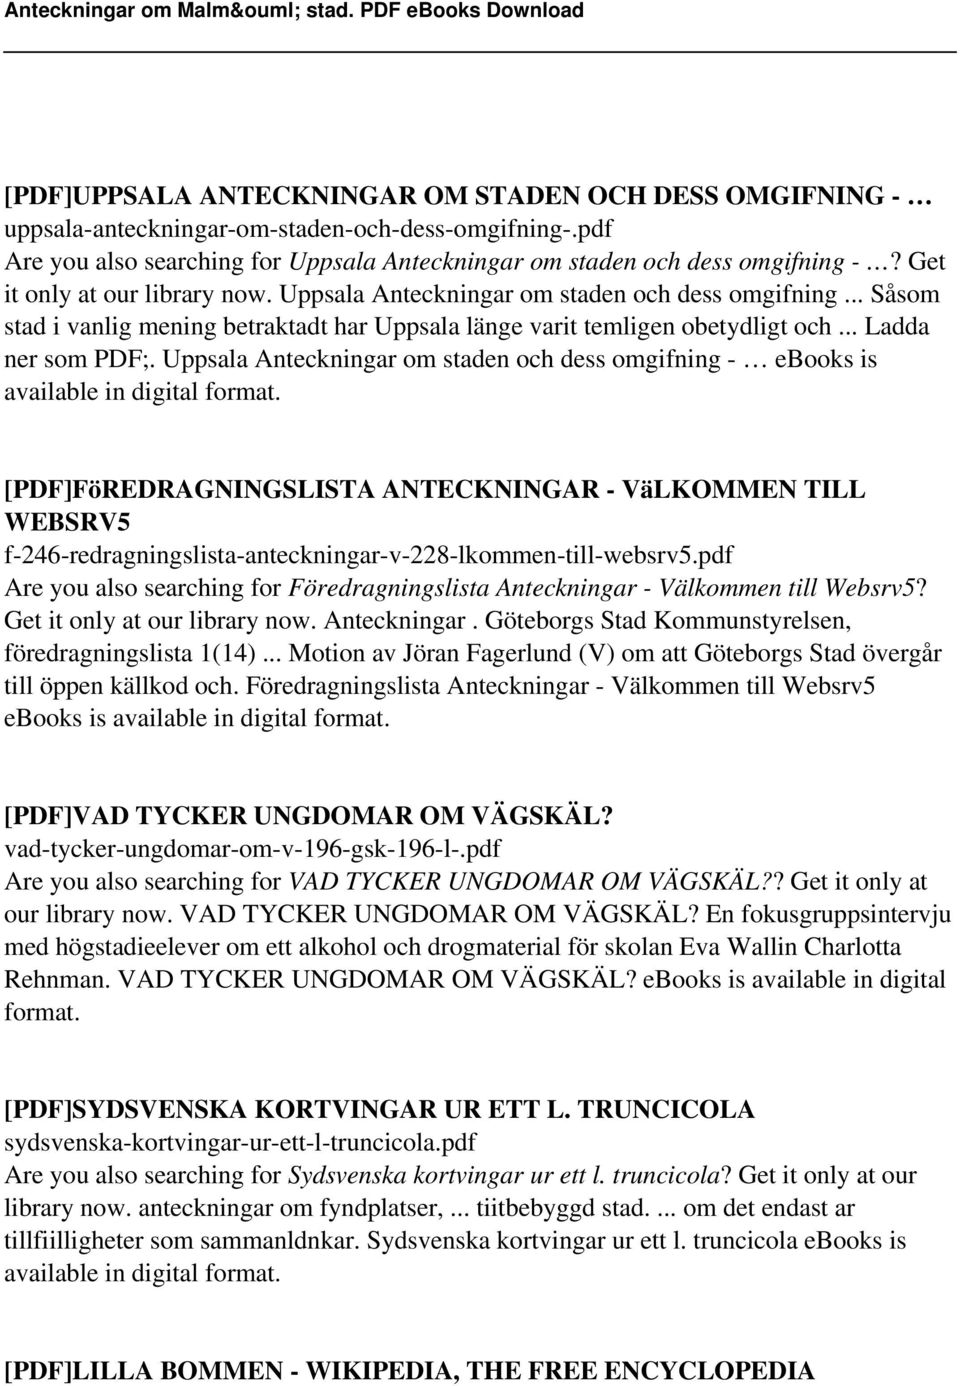 Uppsala Anteckningar om staden och dess omgifning - ebooks is available in digital [PDF]FöREDRAGNINGSLISTA ANTECKNINGAR - VäLKOMMEN TILL WEBSRV5